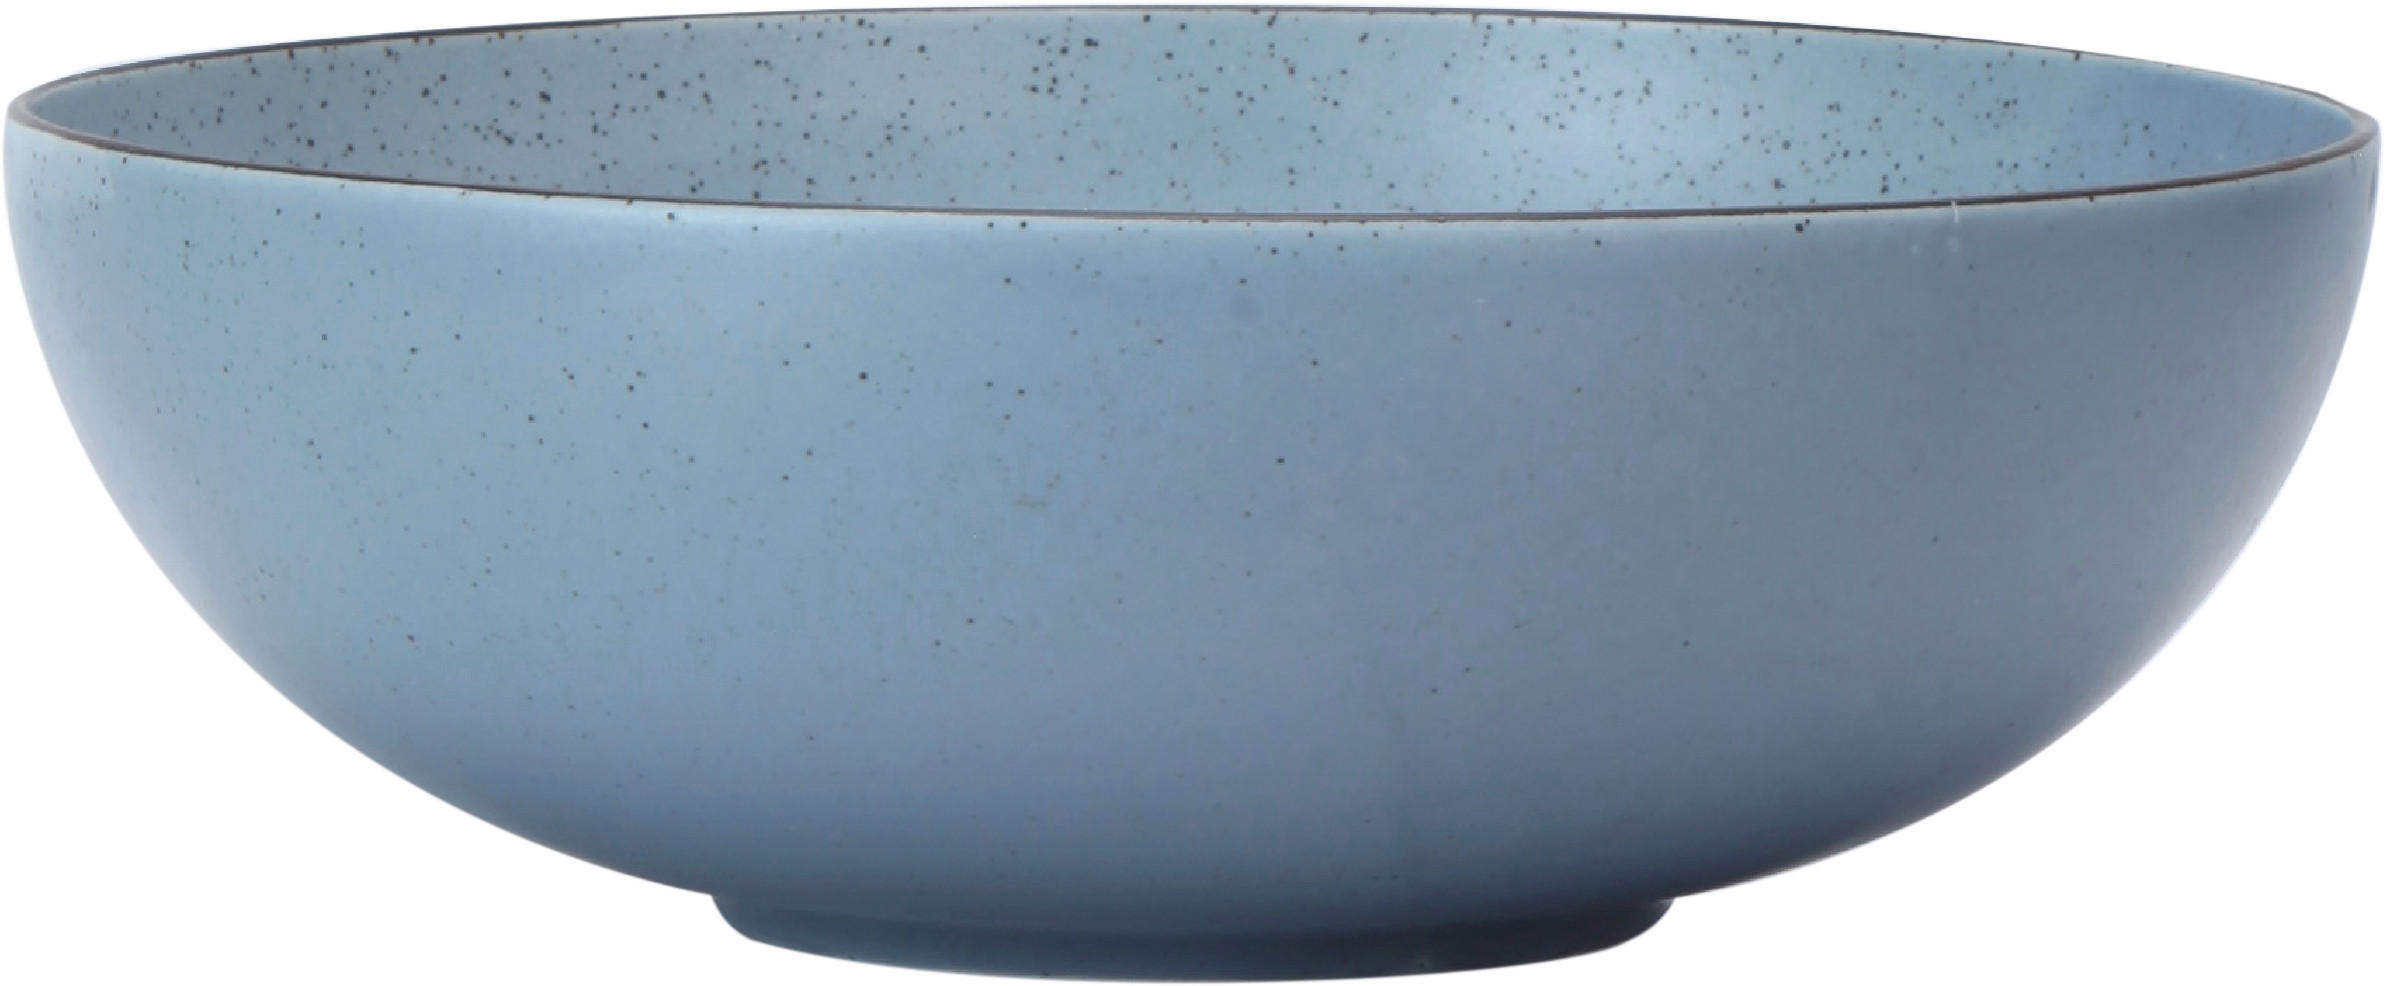 SALATSCHÜSSEL Porzellan Keramik  - Blau, Design, Keramik (23cm) - Landscape